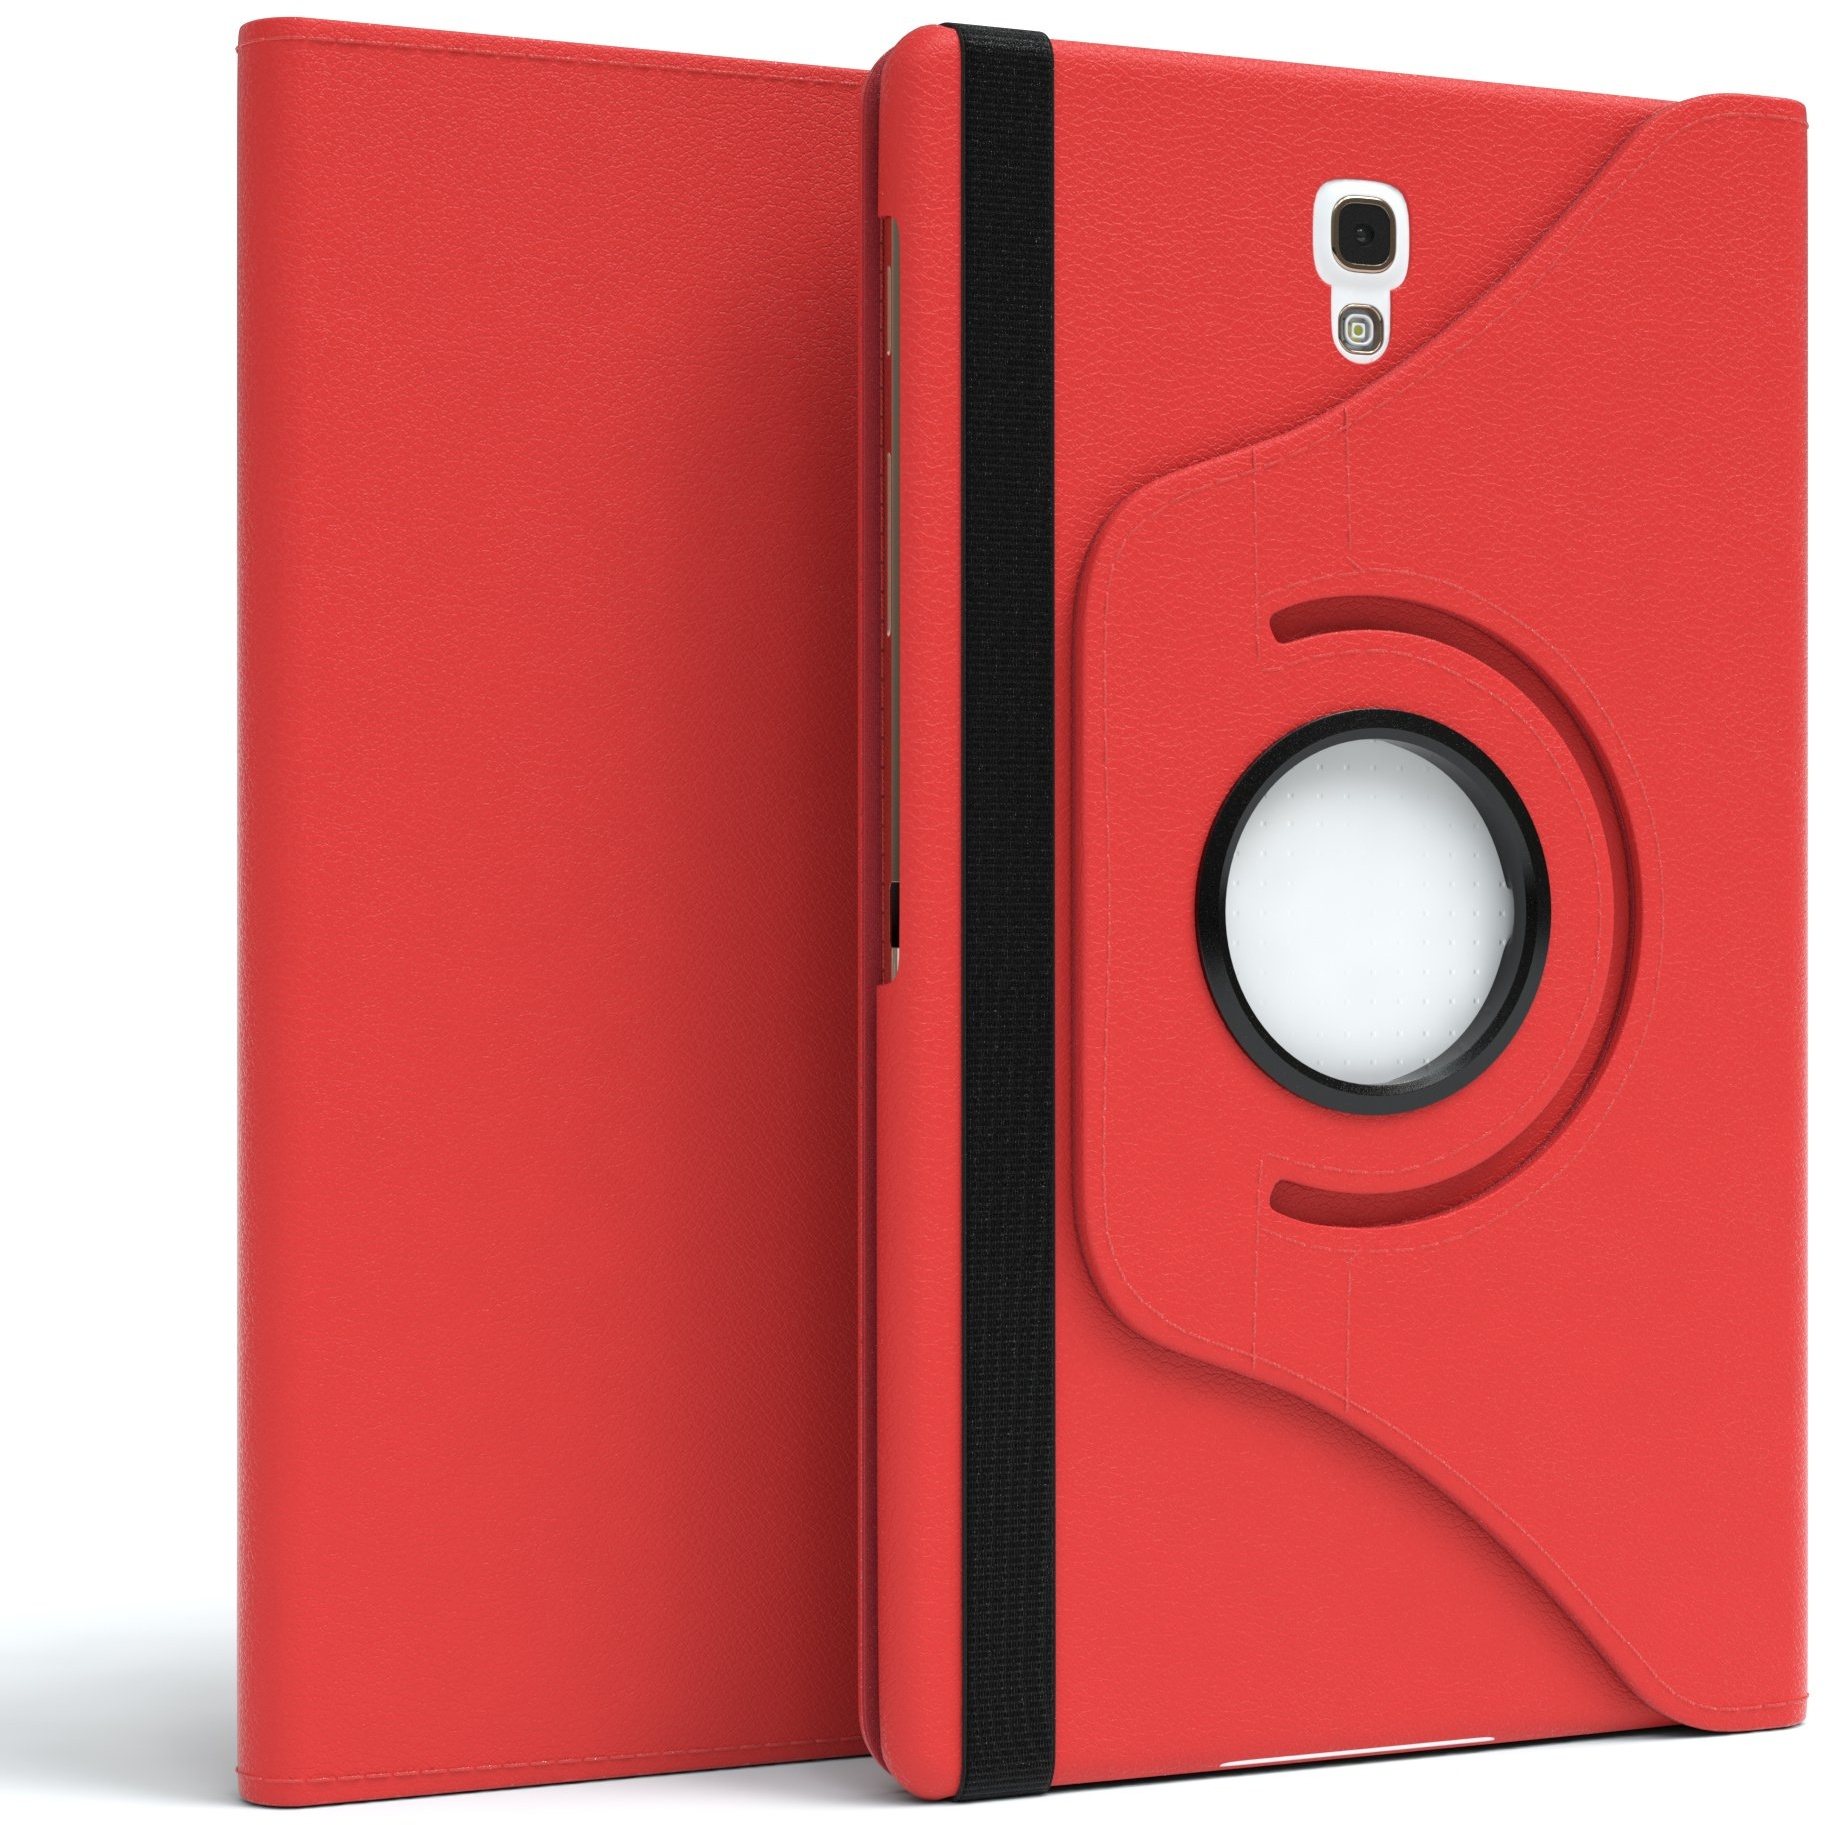 EAZY CASE - Tablet Hülle für Samsung Galaxy Tab S 8.4" Schutzhülle 8.4 Zoll Smart Cover Tablet Case Rotationcase zum Aufstellen Klapphülle 360° drehbar mit Standfunktion Tasche Kunstleder Rot